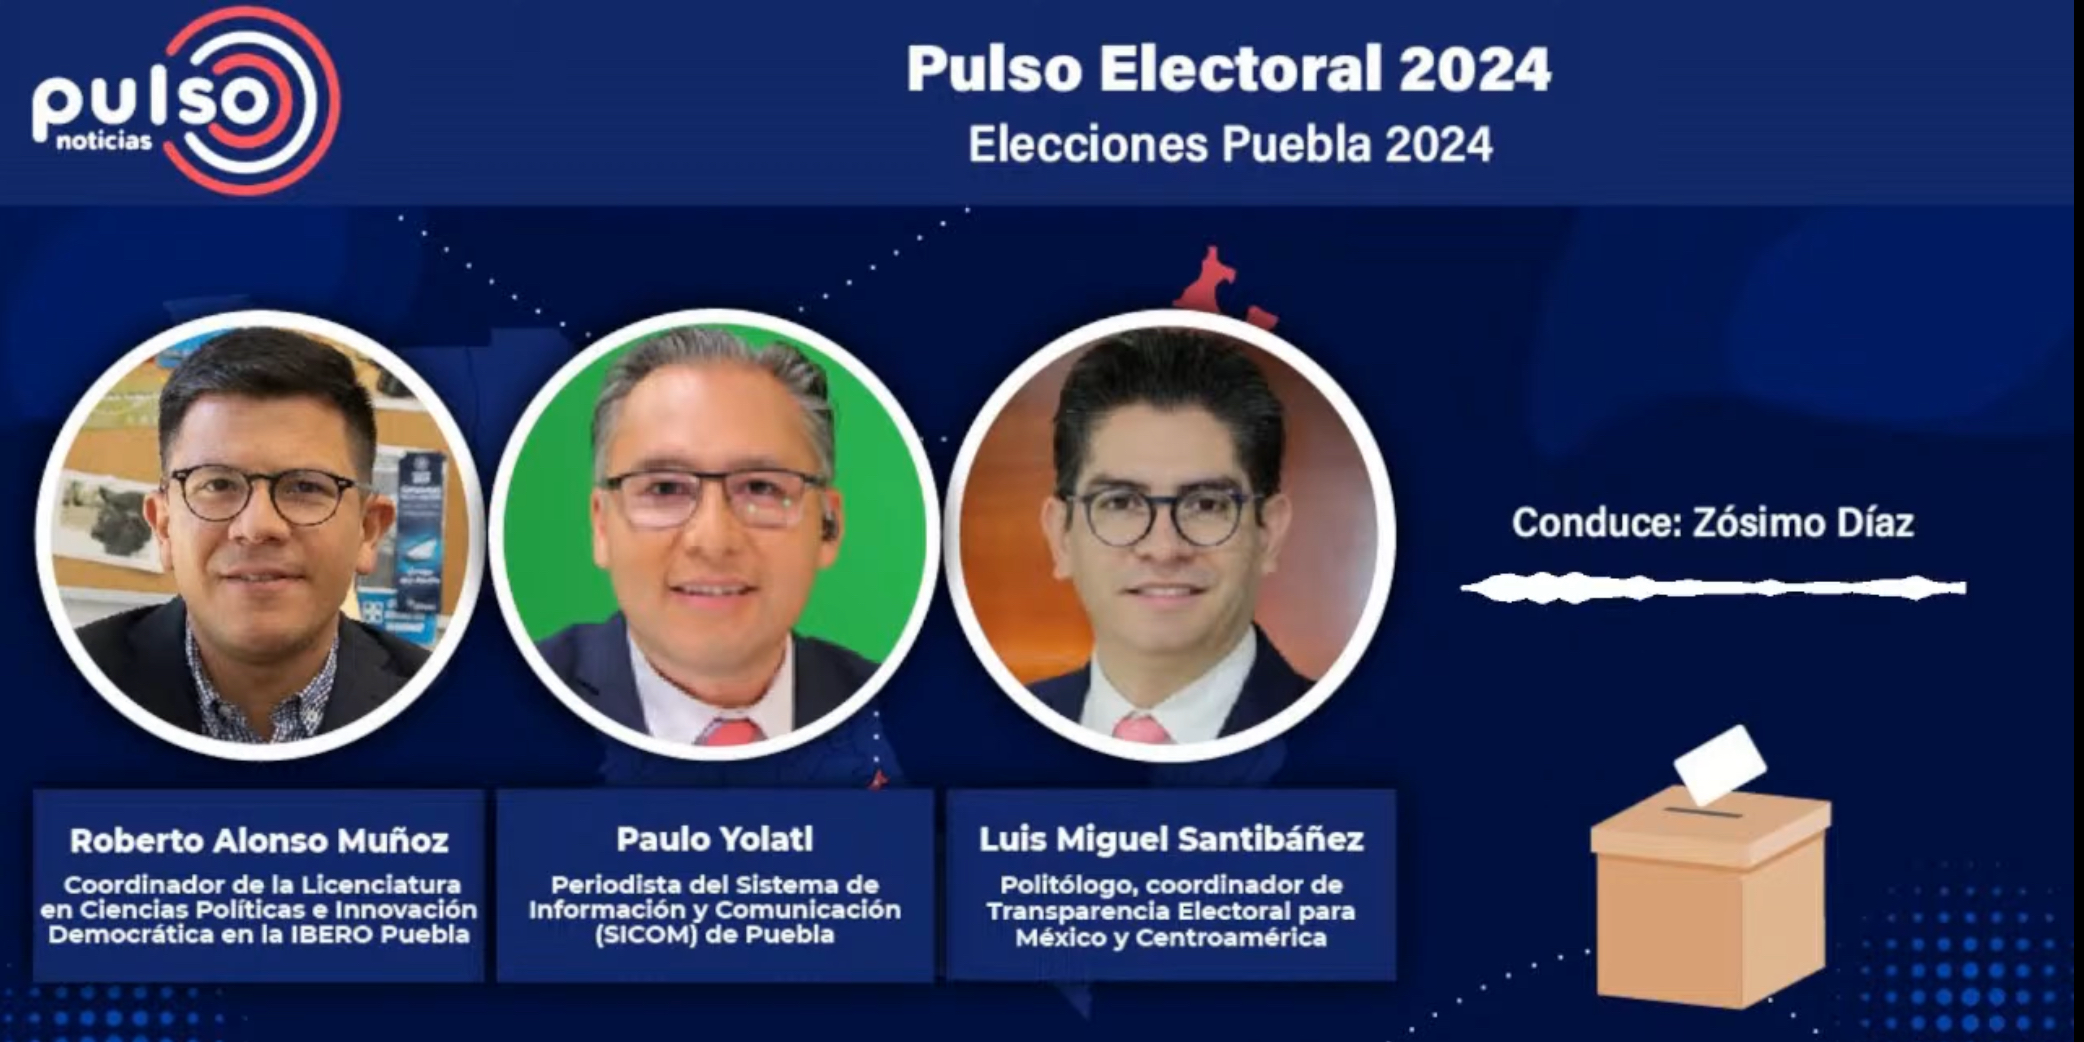 Pulso Electoral 2024: Elections in Puebla